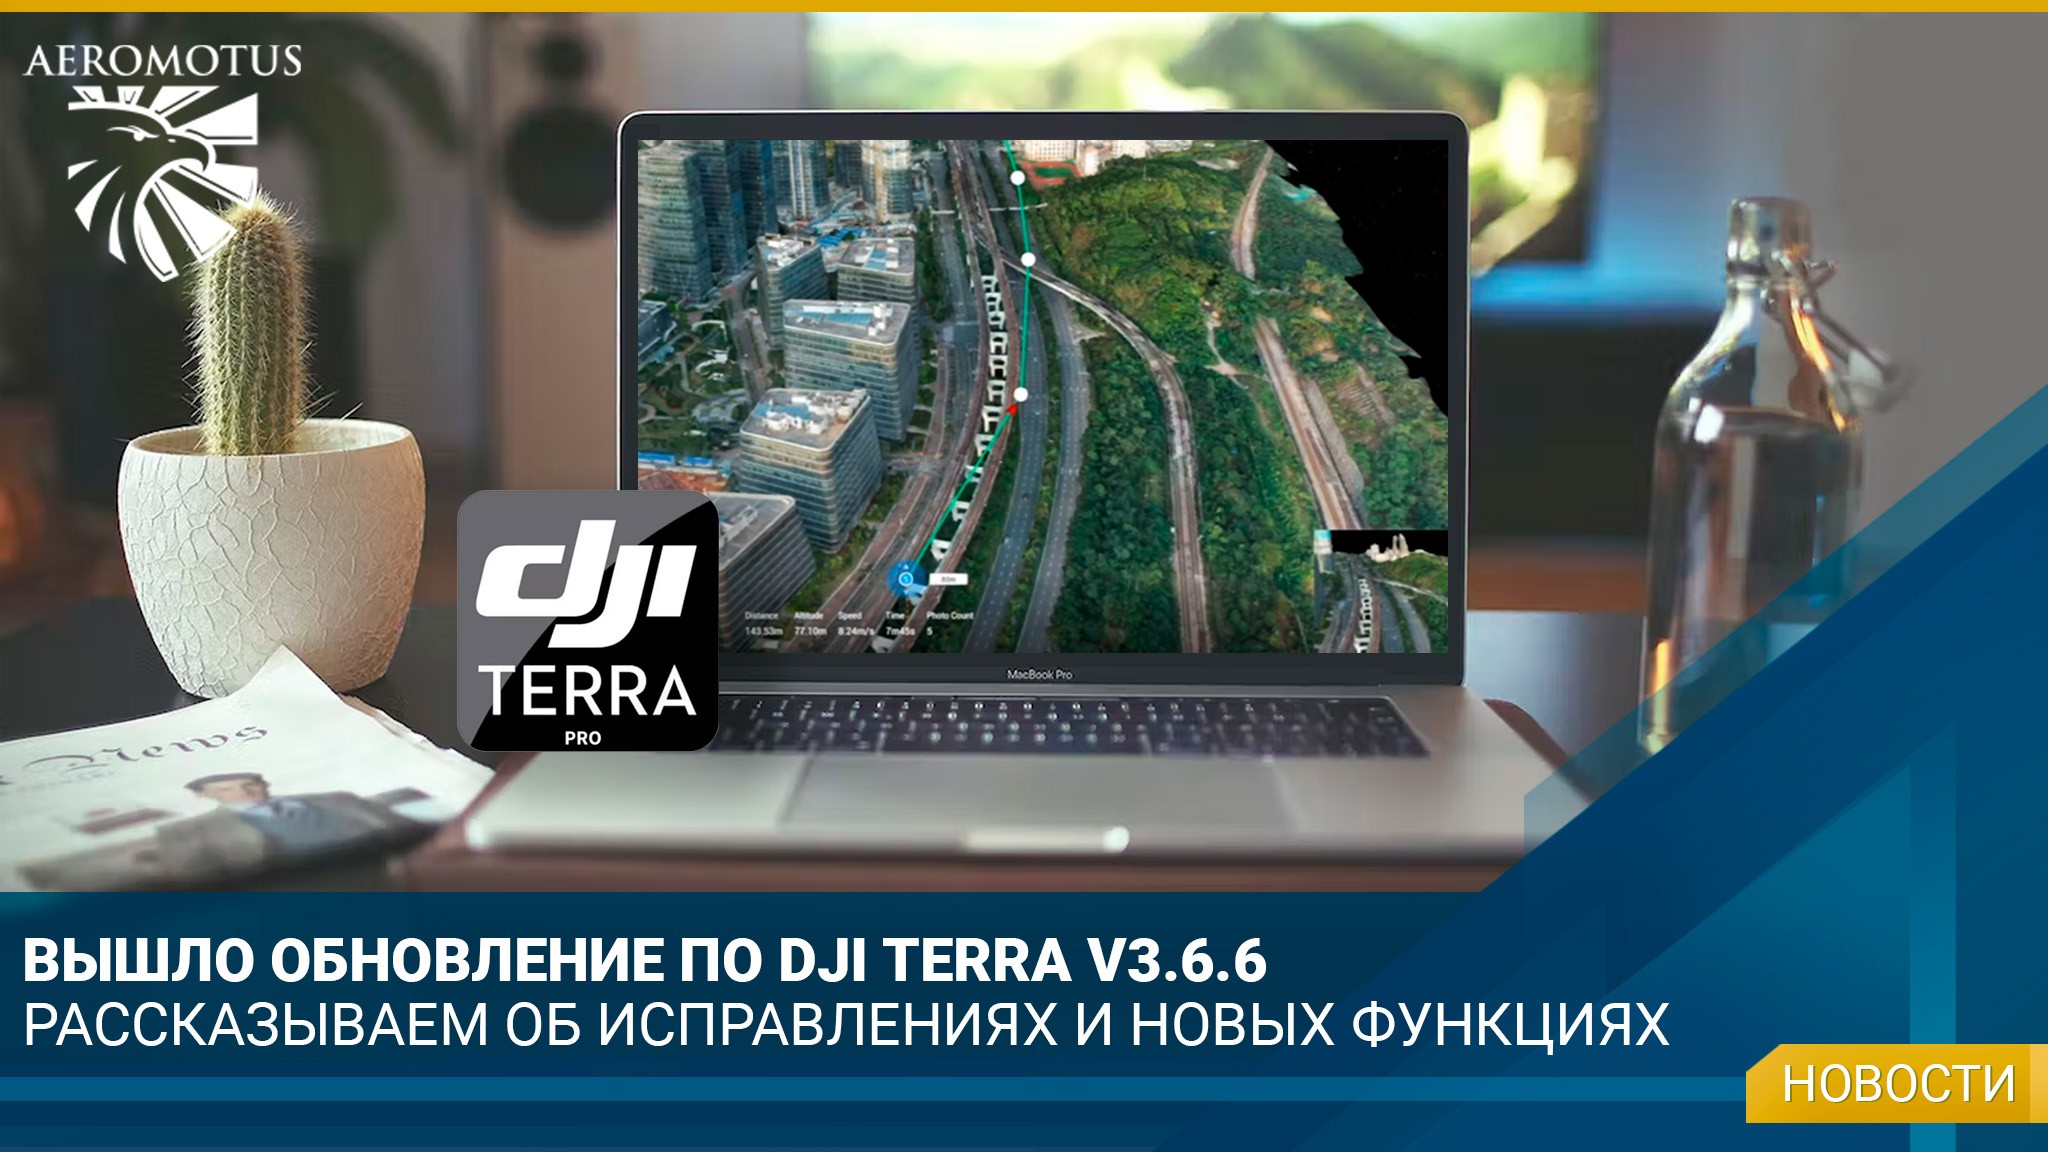 Компания DJI выпустила очередное обновление ПО DJI TERRA V3.6.6 - ПО